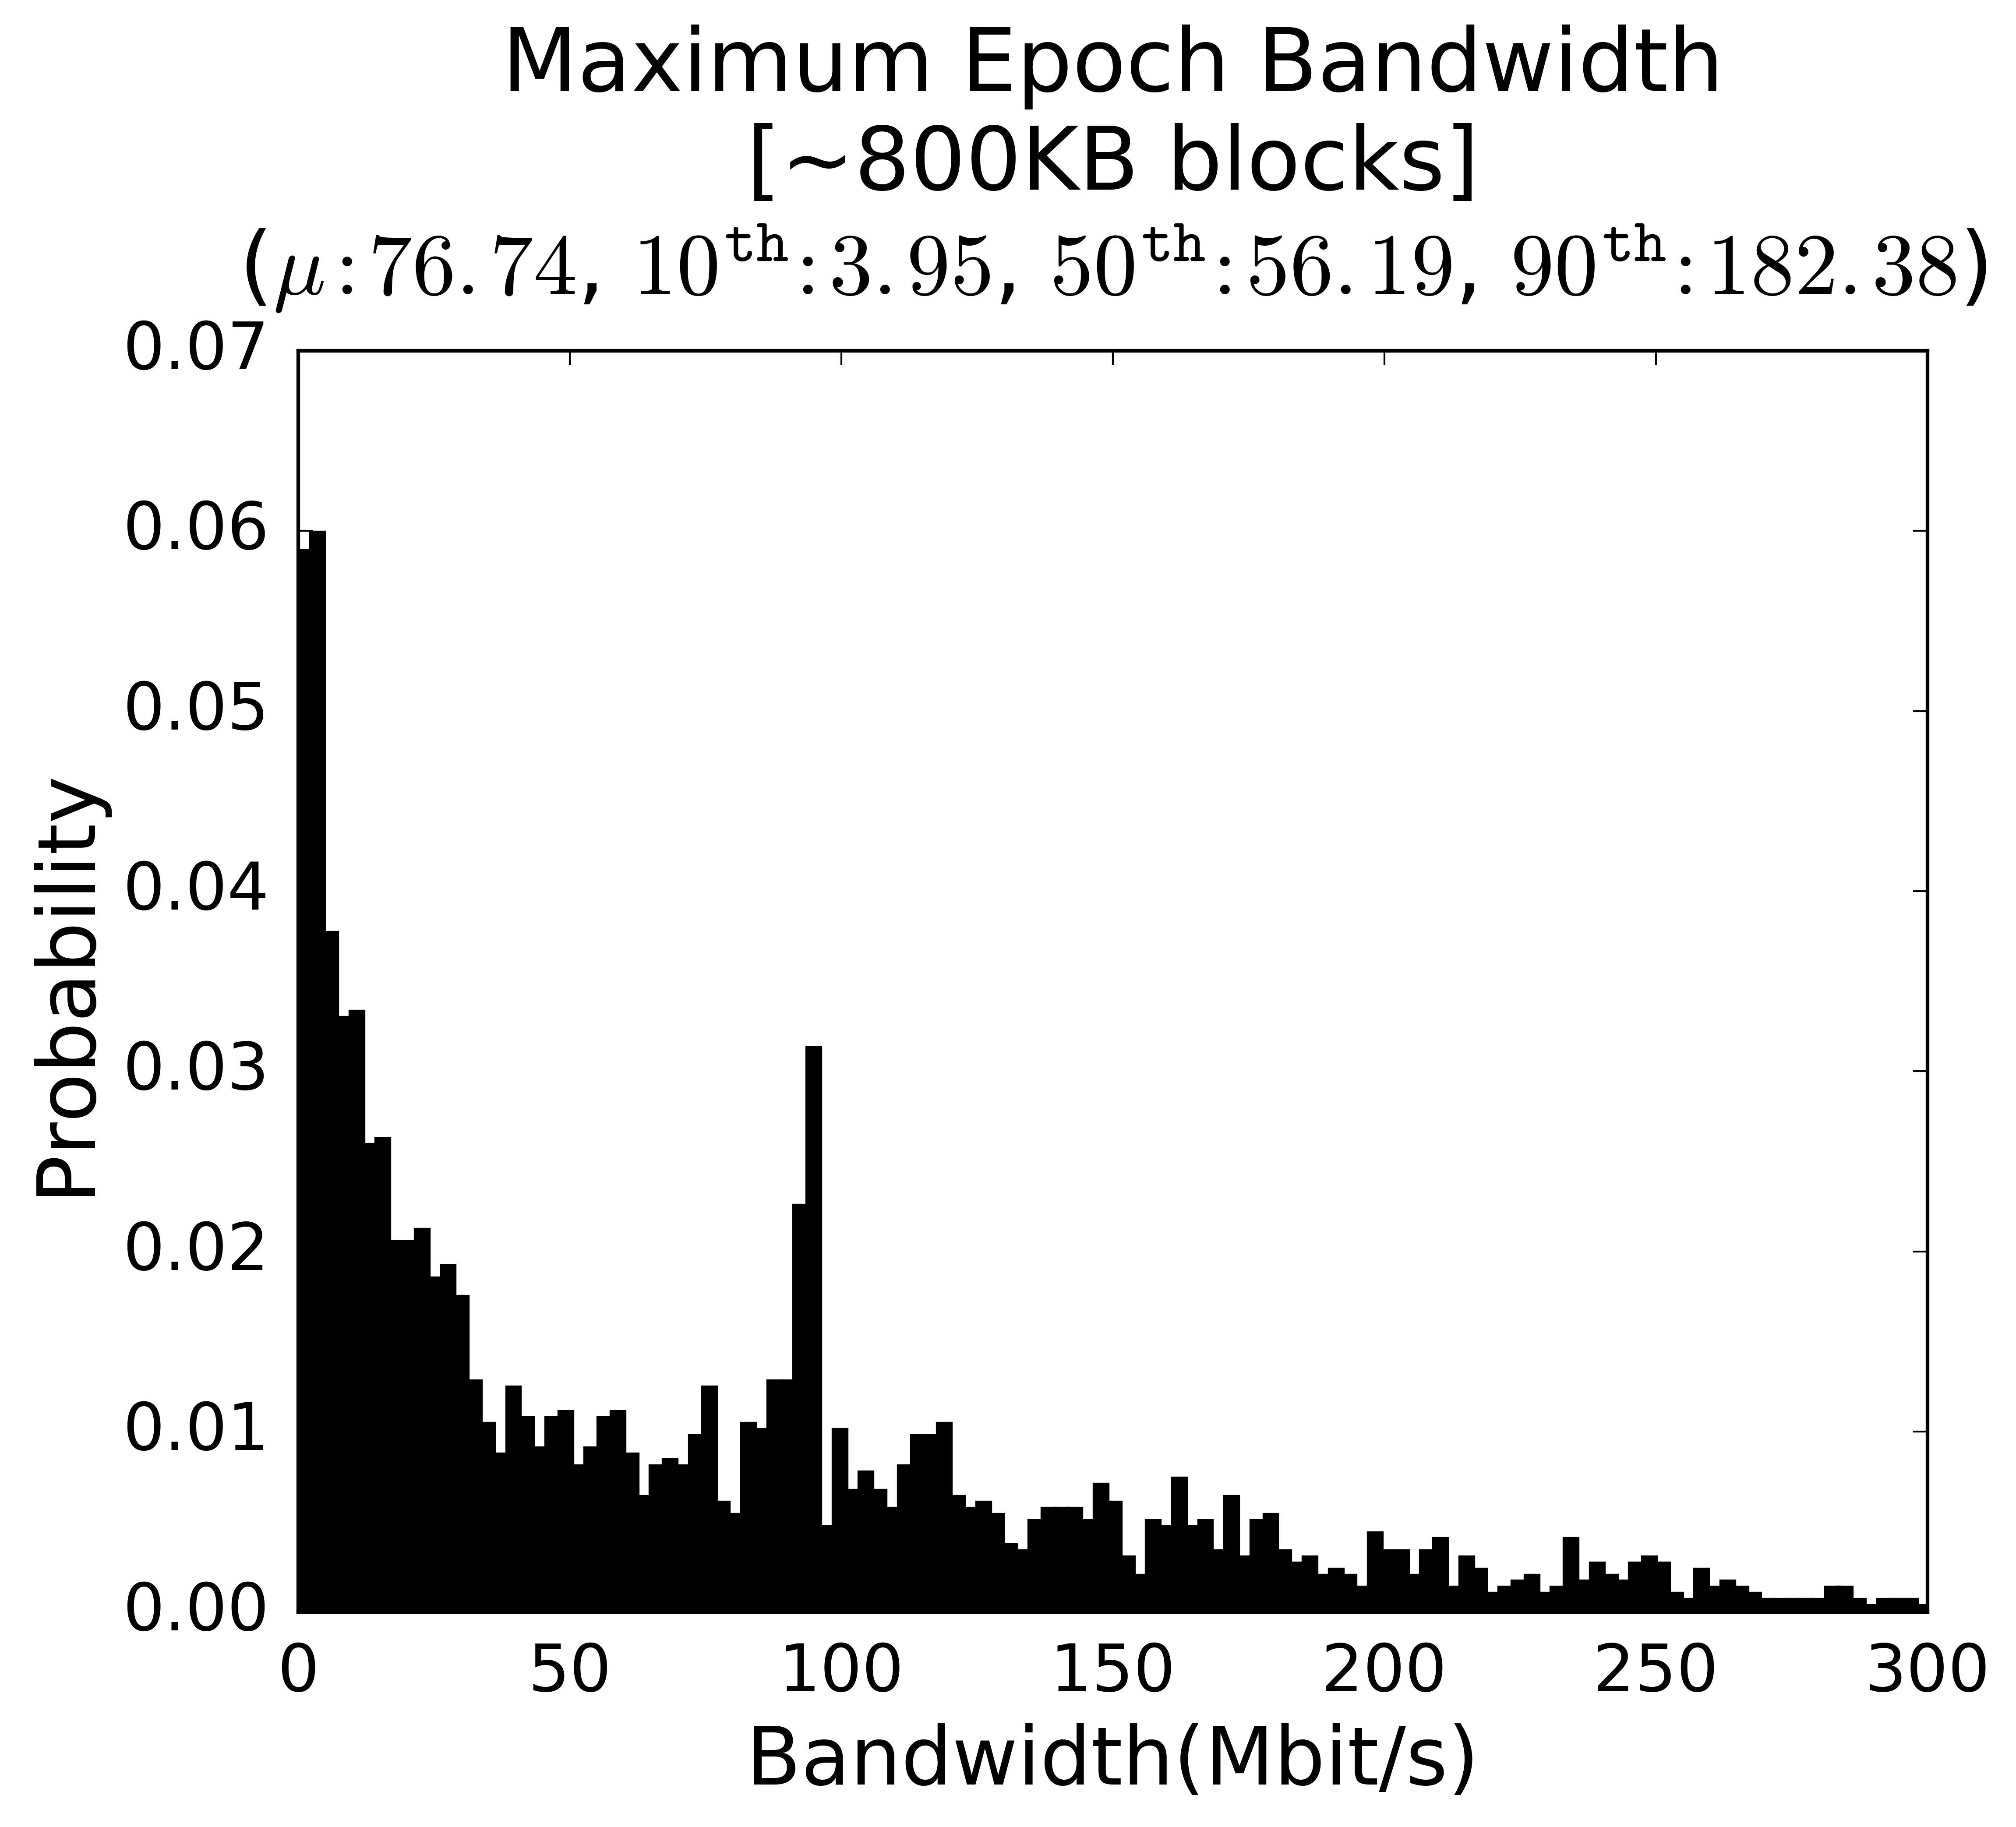 Maximum epoch bandwidth for Bitcoin's IPv4 nodes